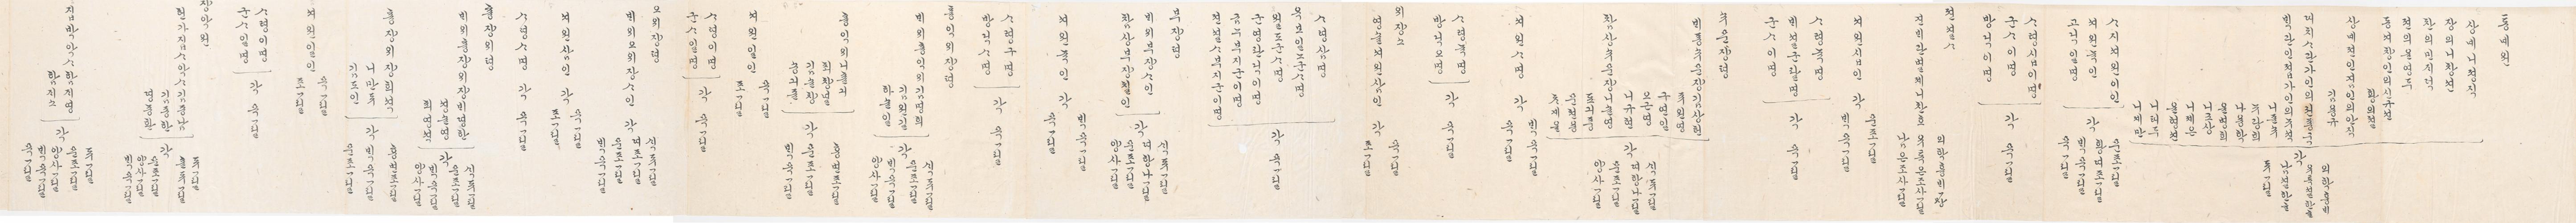 2_1894년 2월 왕세자 탄일 기념 상격 발기 3.jpg